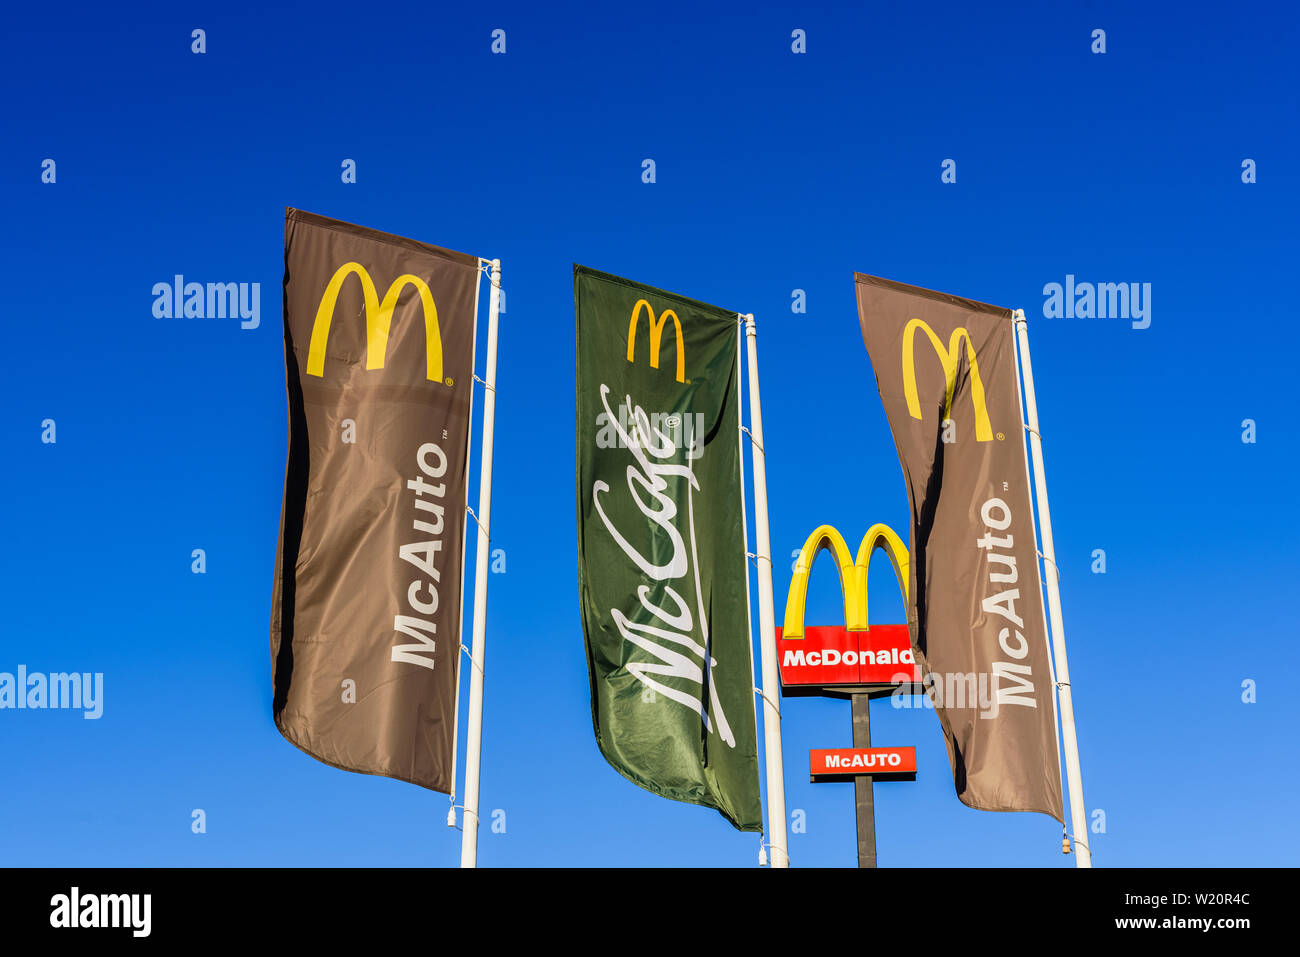 Valencia, Espagne - 29 mai 2019 : Affiche publicitaire de McDonald's restaurant en Espagne, la marque visible de l'autoroute. Copier l'espace. Banque D'Images